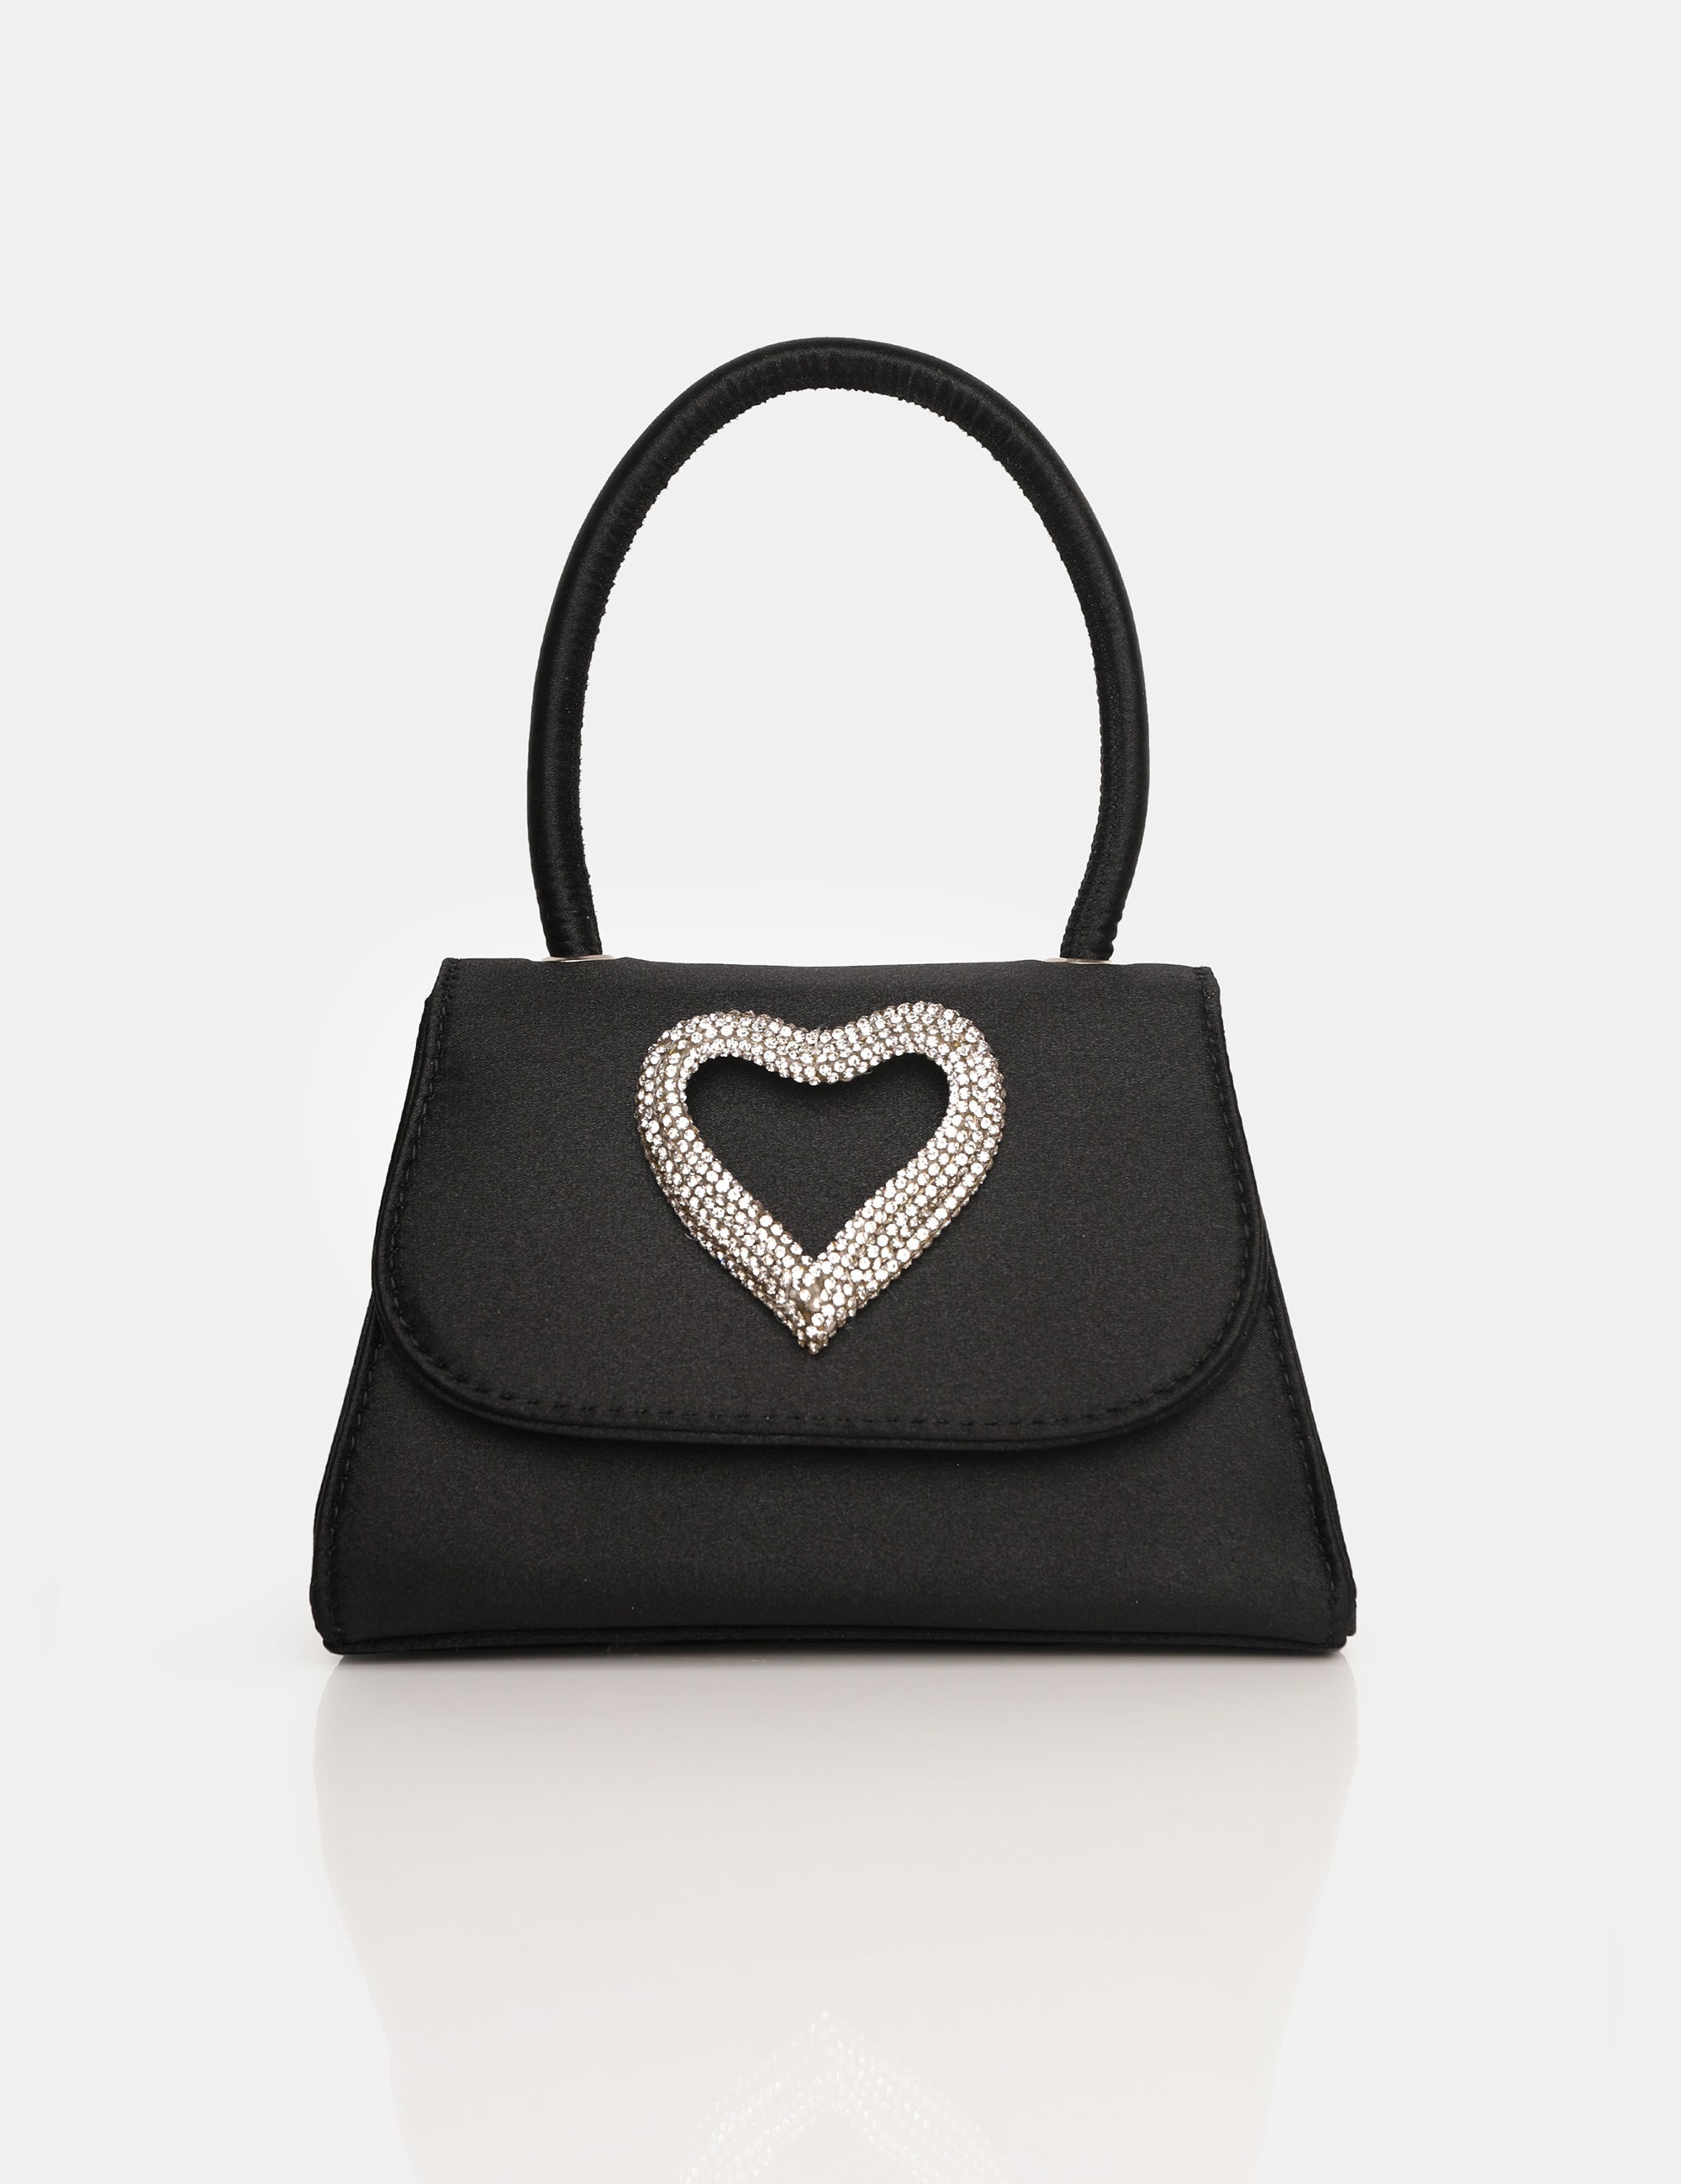 The Heart Black Satin Mini Bag